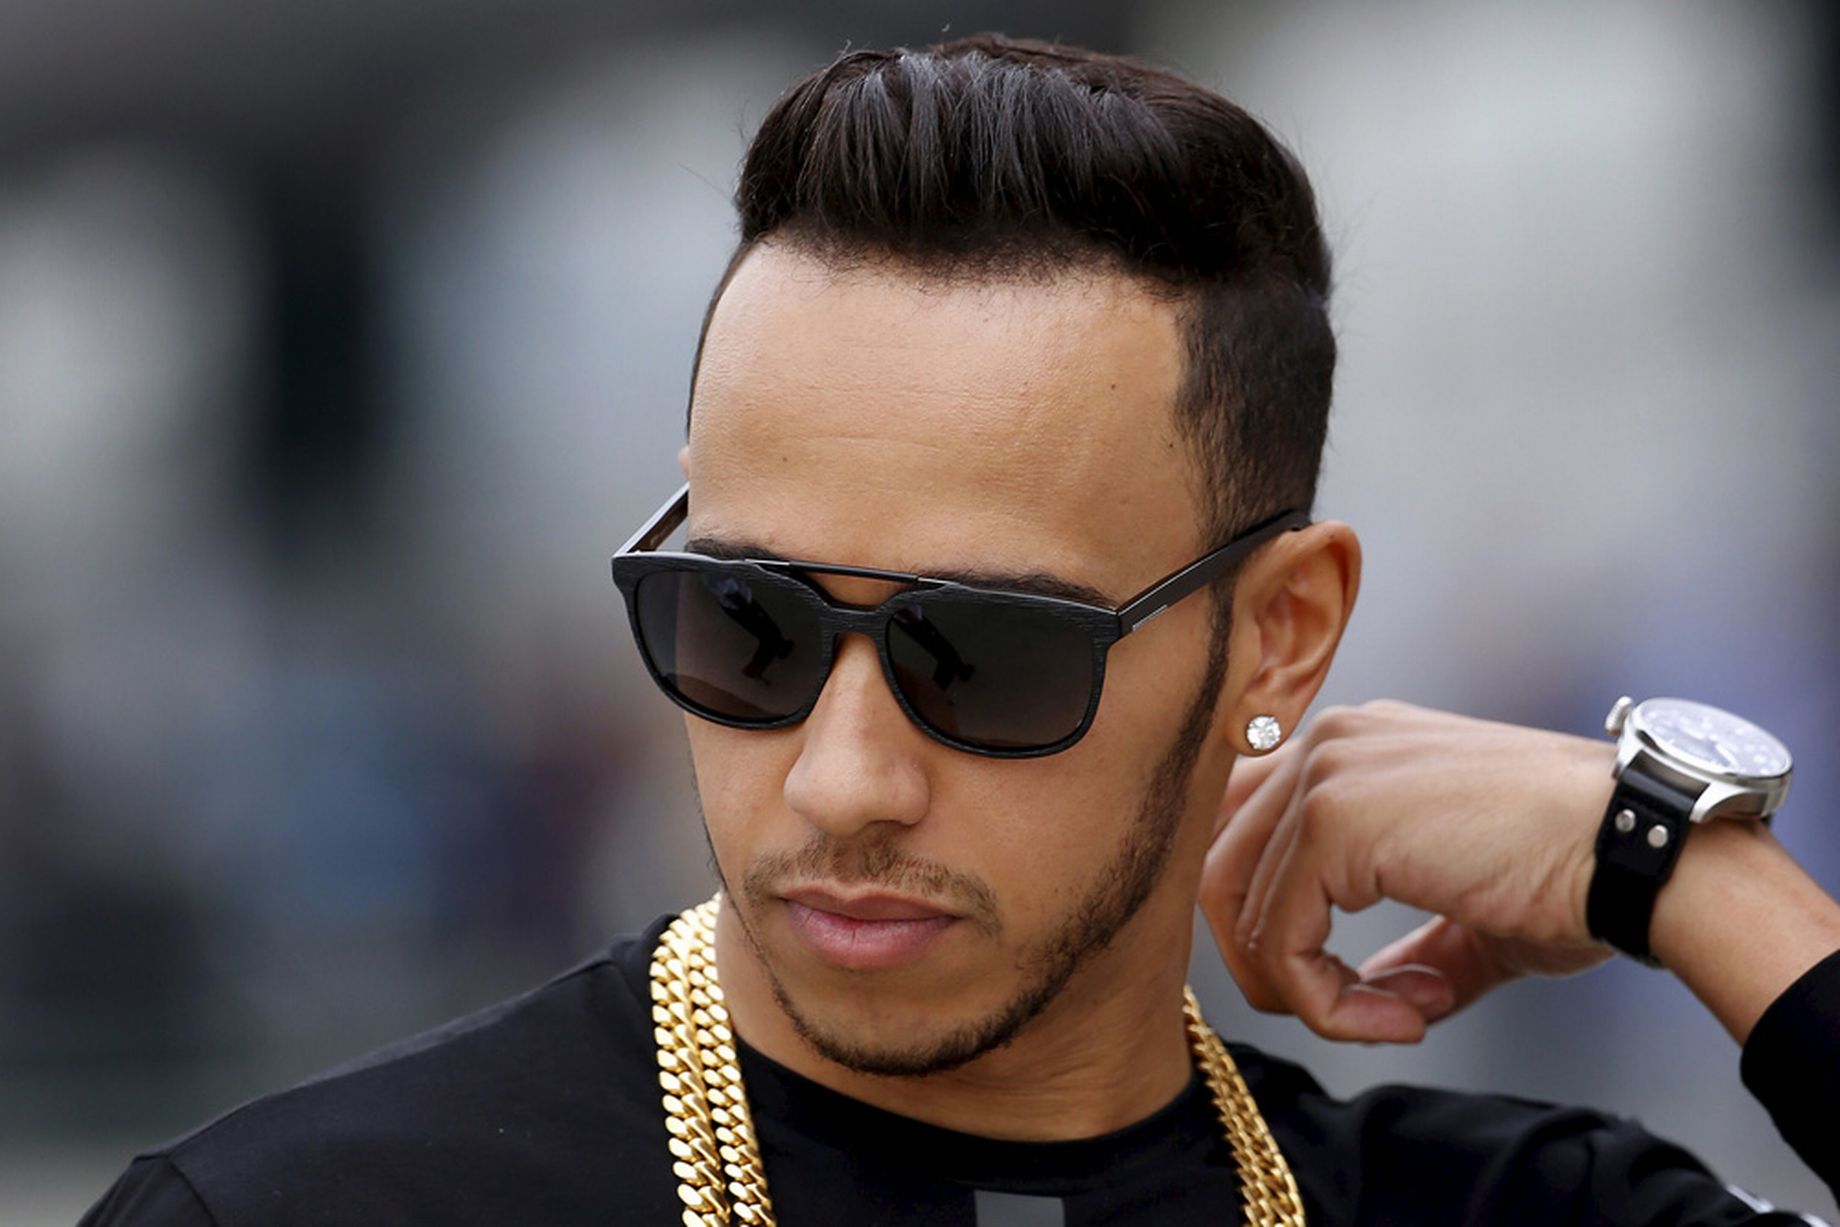 Formula 1 Lewis Hamilton makes controversial comments about diversity